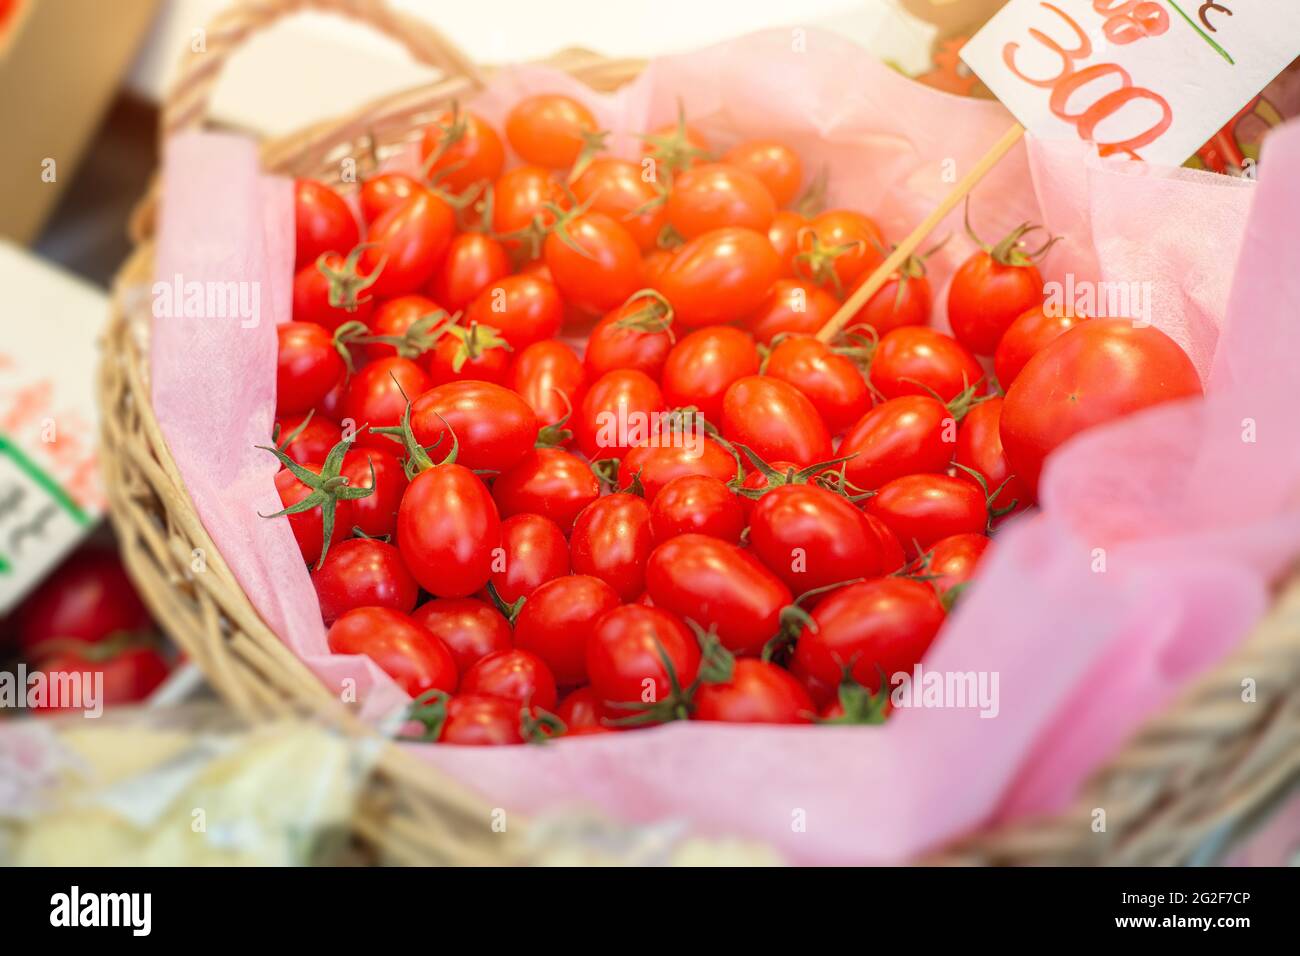 Tomates de raisin ou cerise cocktail tomates fraîches légumes de fruits mûrs de petite taille pour la vente de salades sur le marché japonais. Banque D'Images